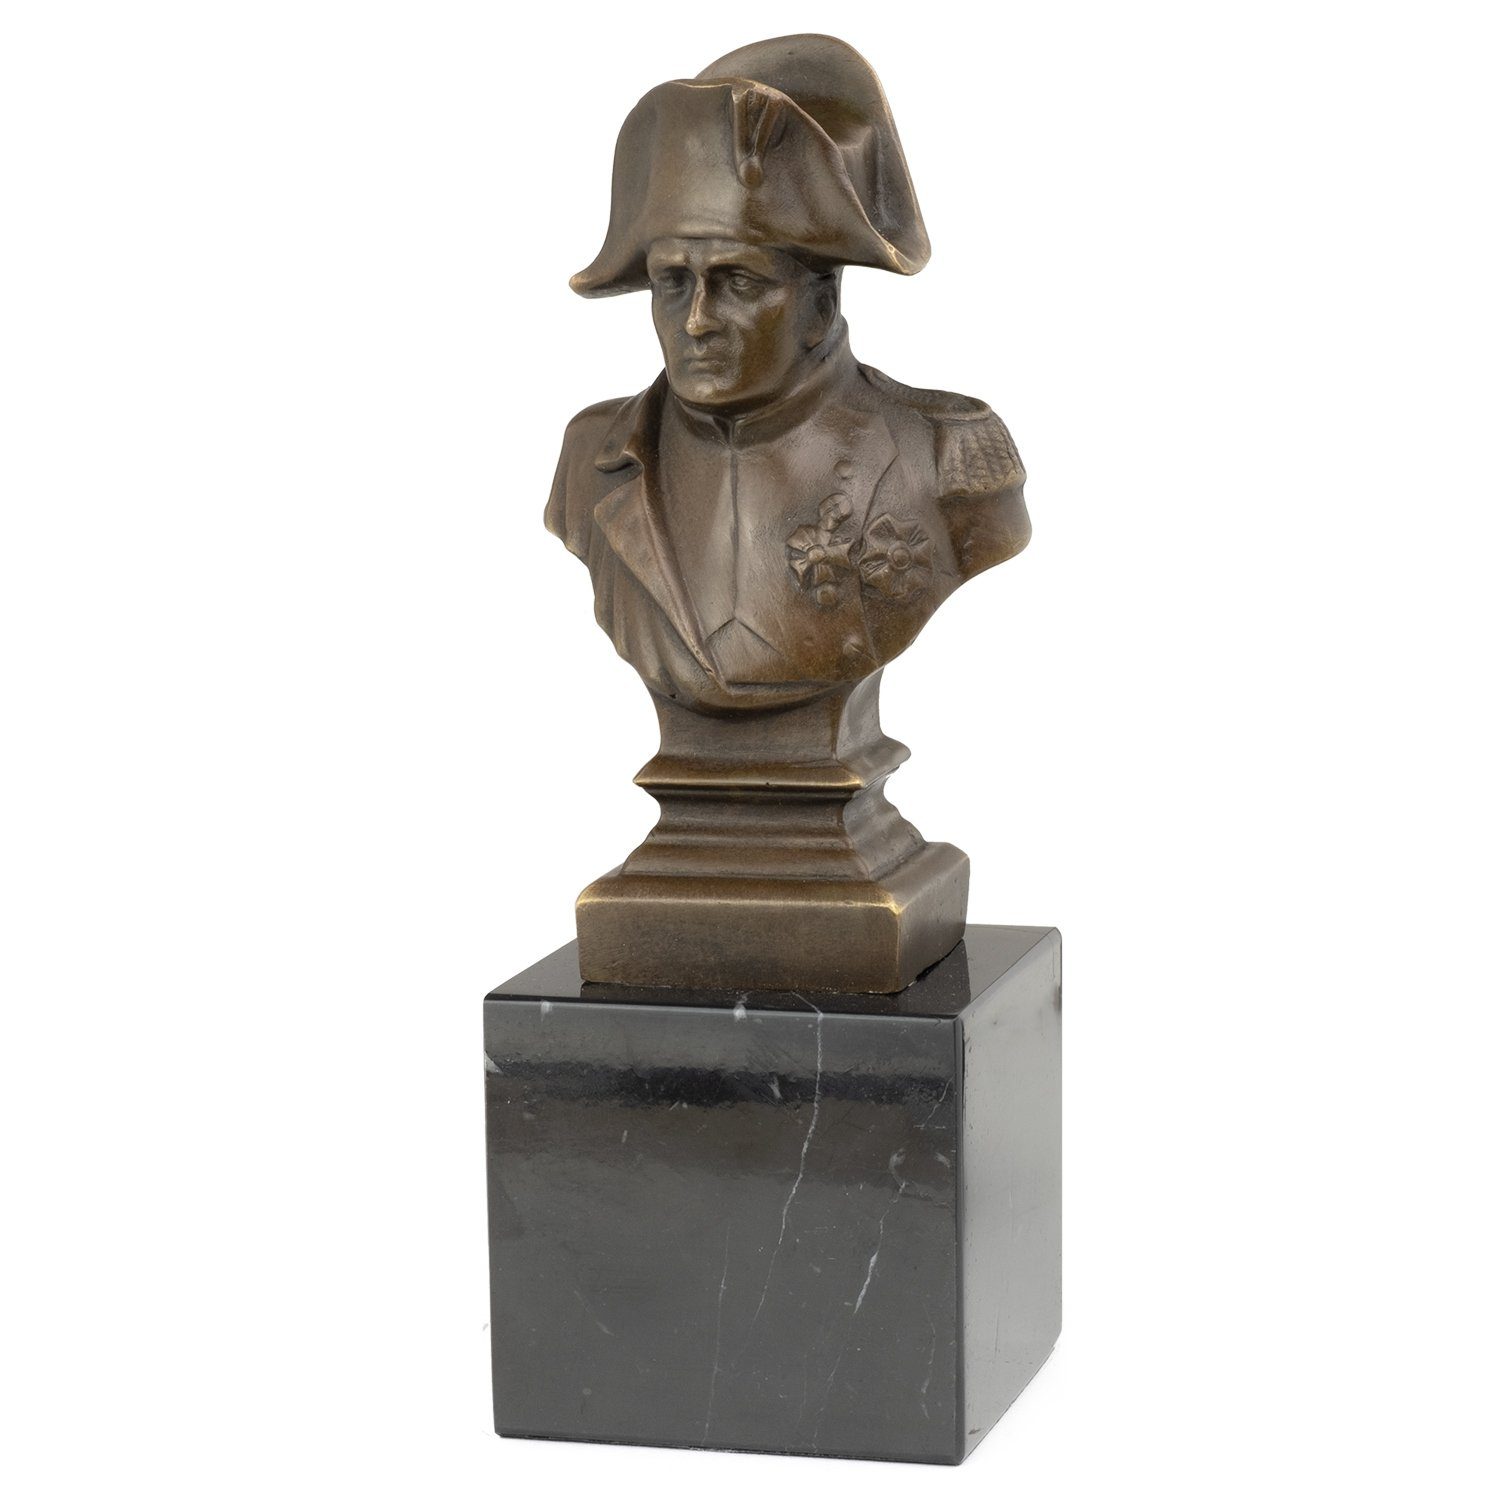 Moritz Skulptur Bronzefigur Kaiser Napoleon Skulpturen Antik-Stil Büste, Statue Figuren